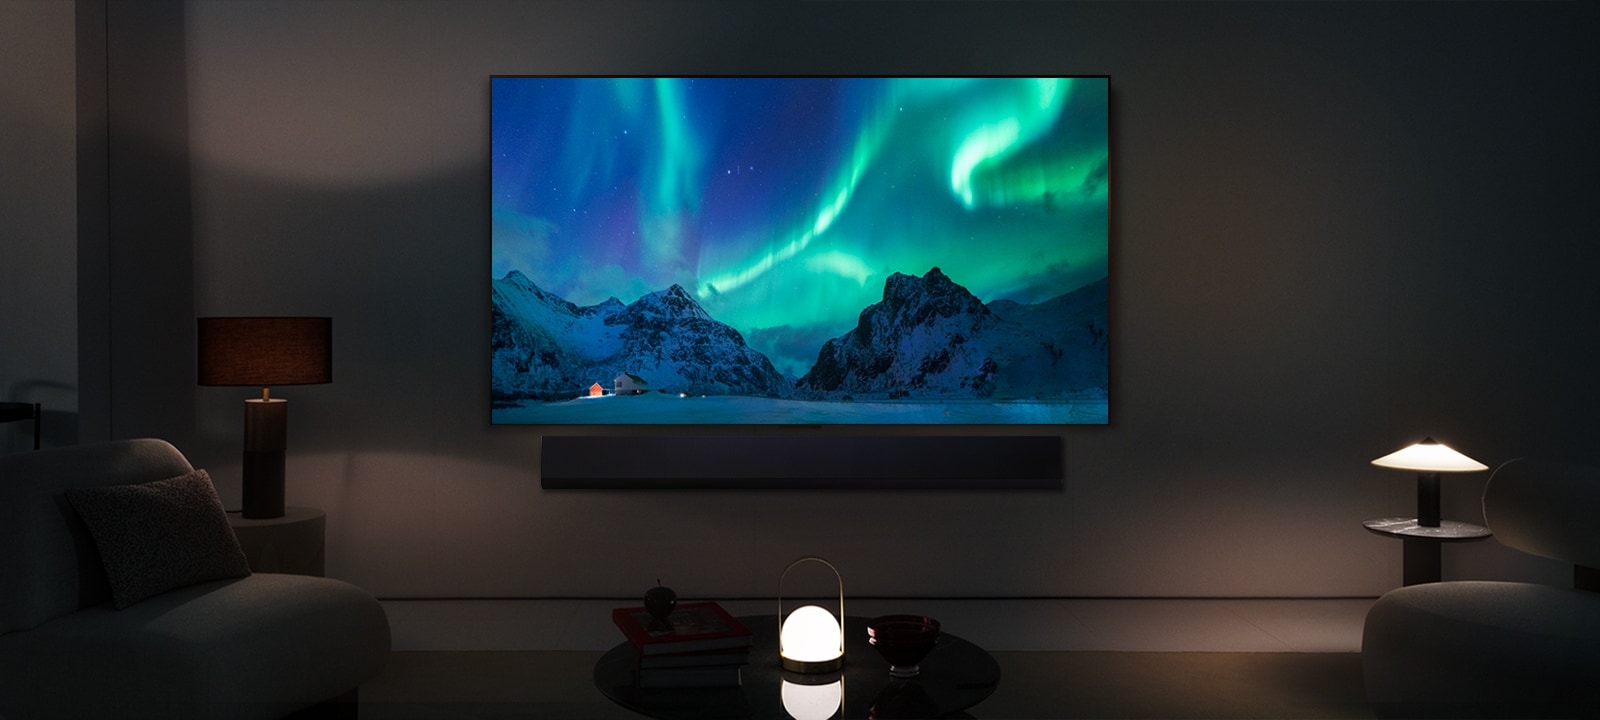 LG OLED TV ในพื้นที่อยู่อาศัยอันทันสมัยในเวลากลางคืน ภาพหน้าจอของแสงออโรร่า บอเรลิส จะแสดงด้วยระดับความสว่างที่เหมาะสมที่สุด